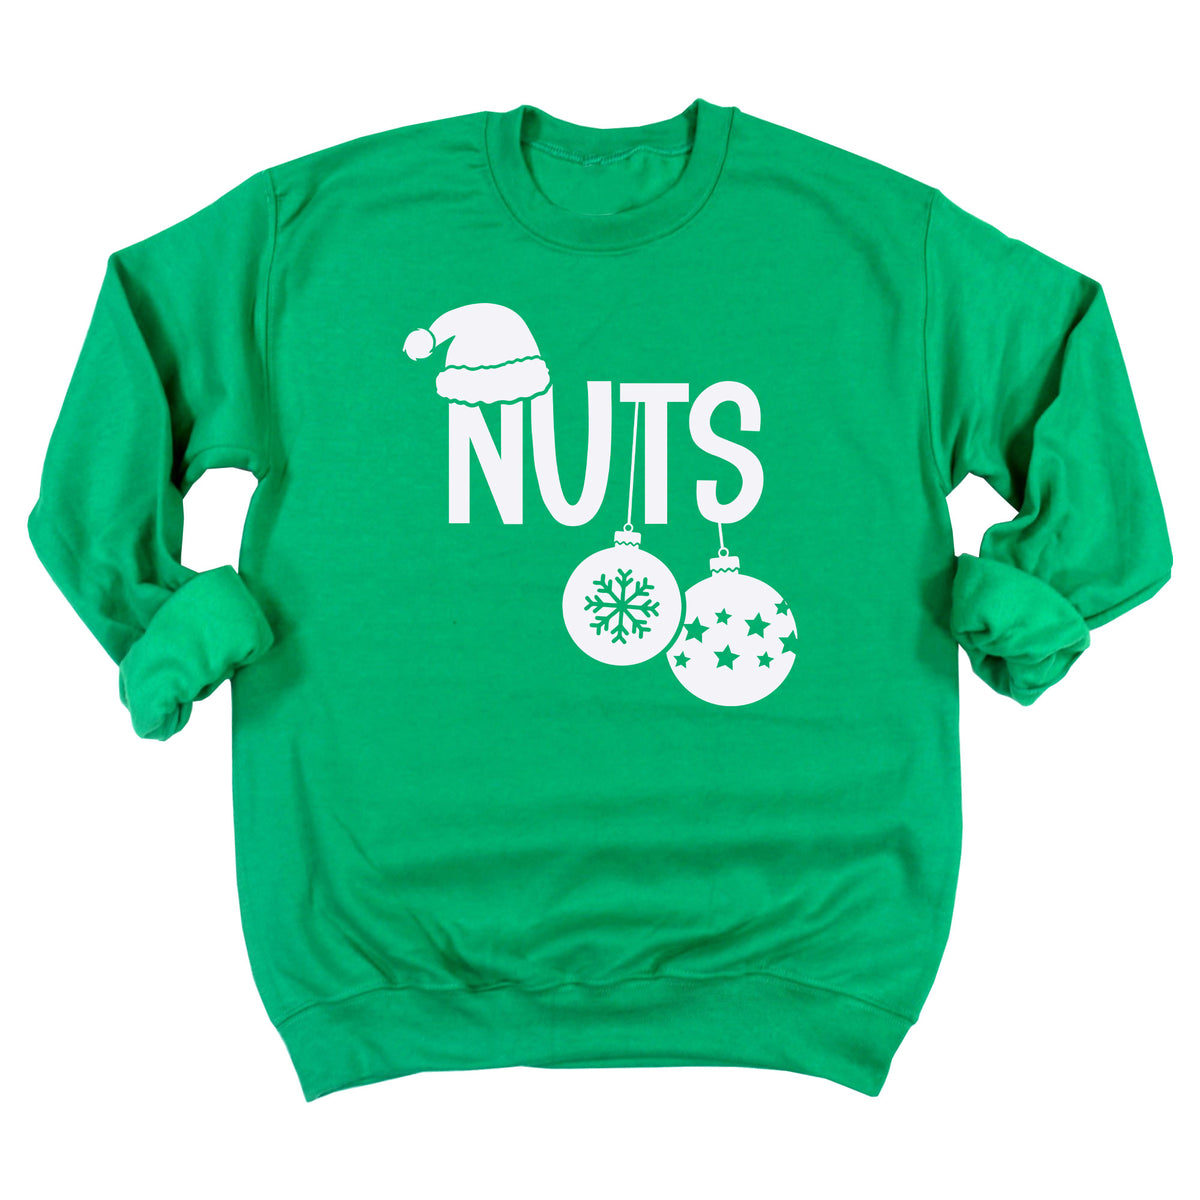 Chest / Nuts Sweatshirt